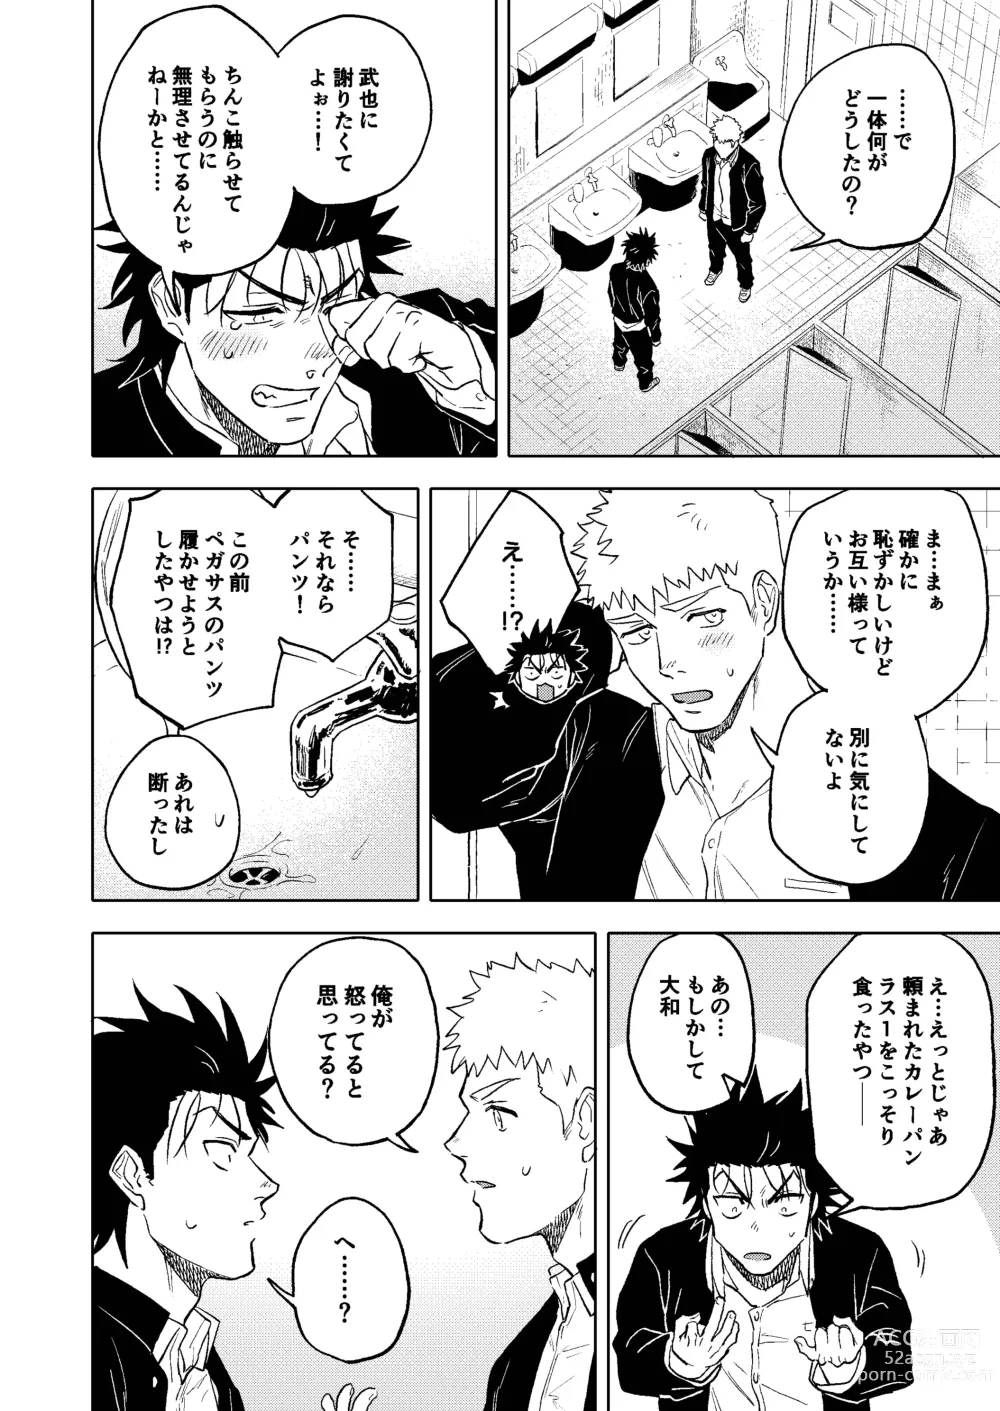 Page 17 of doujinshi Dainarishounari 2